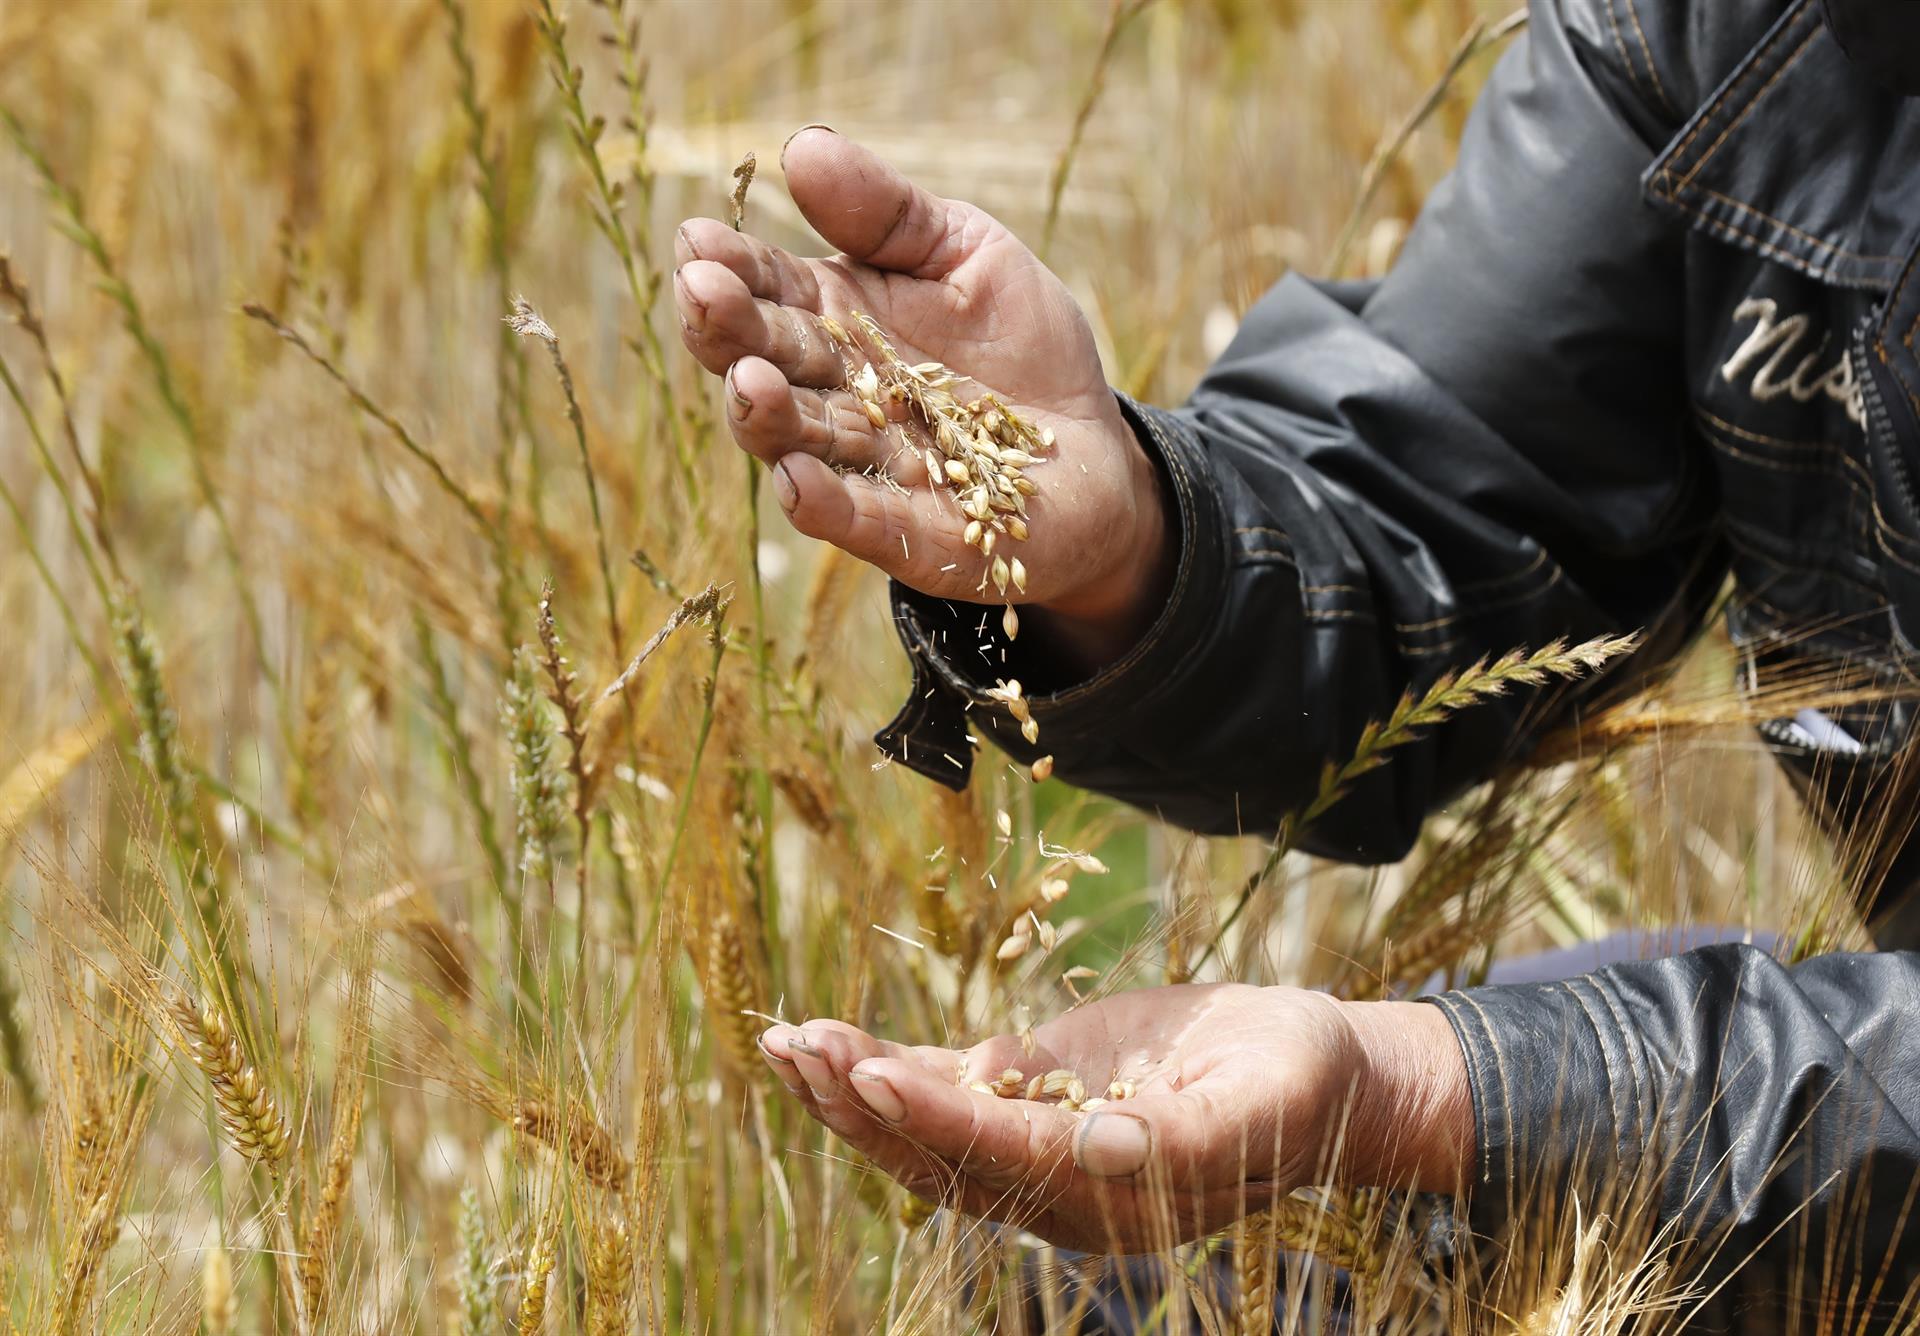 Un agricultor muestra semillas de trigo. Efeagro/Mauricio Dueñas Castañeda